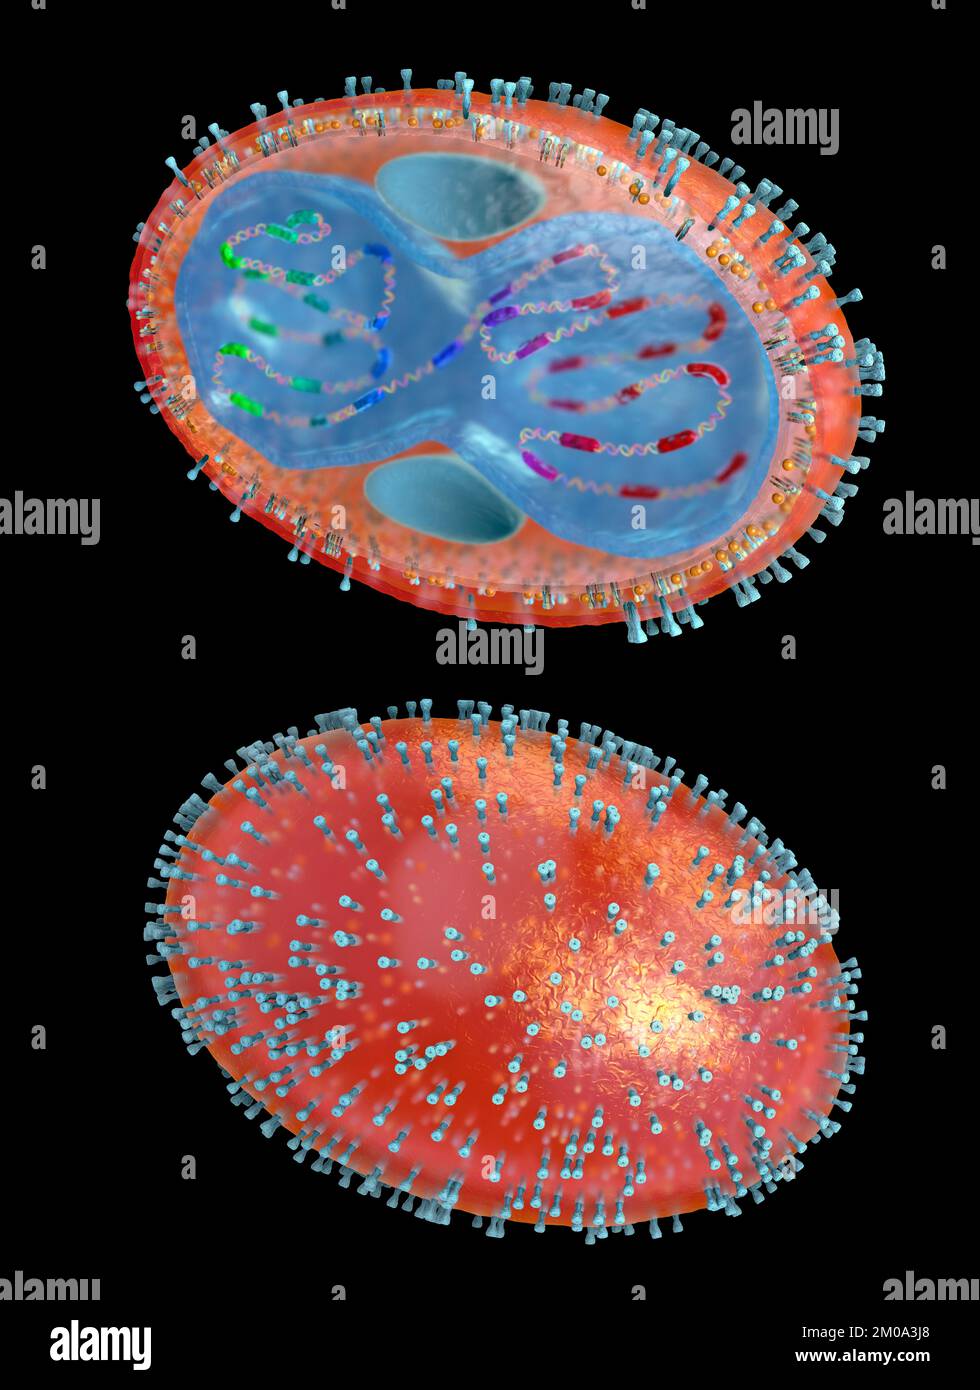 Sezione trasversale di un agente patogeno del vaiolo con membrana cellulare, nucleocapside, parete cellulare e glicoproteine - illustrazione 3D Foto Stock